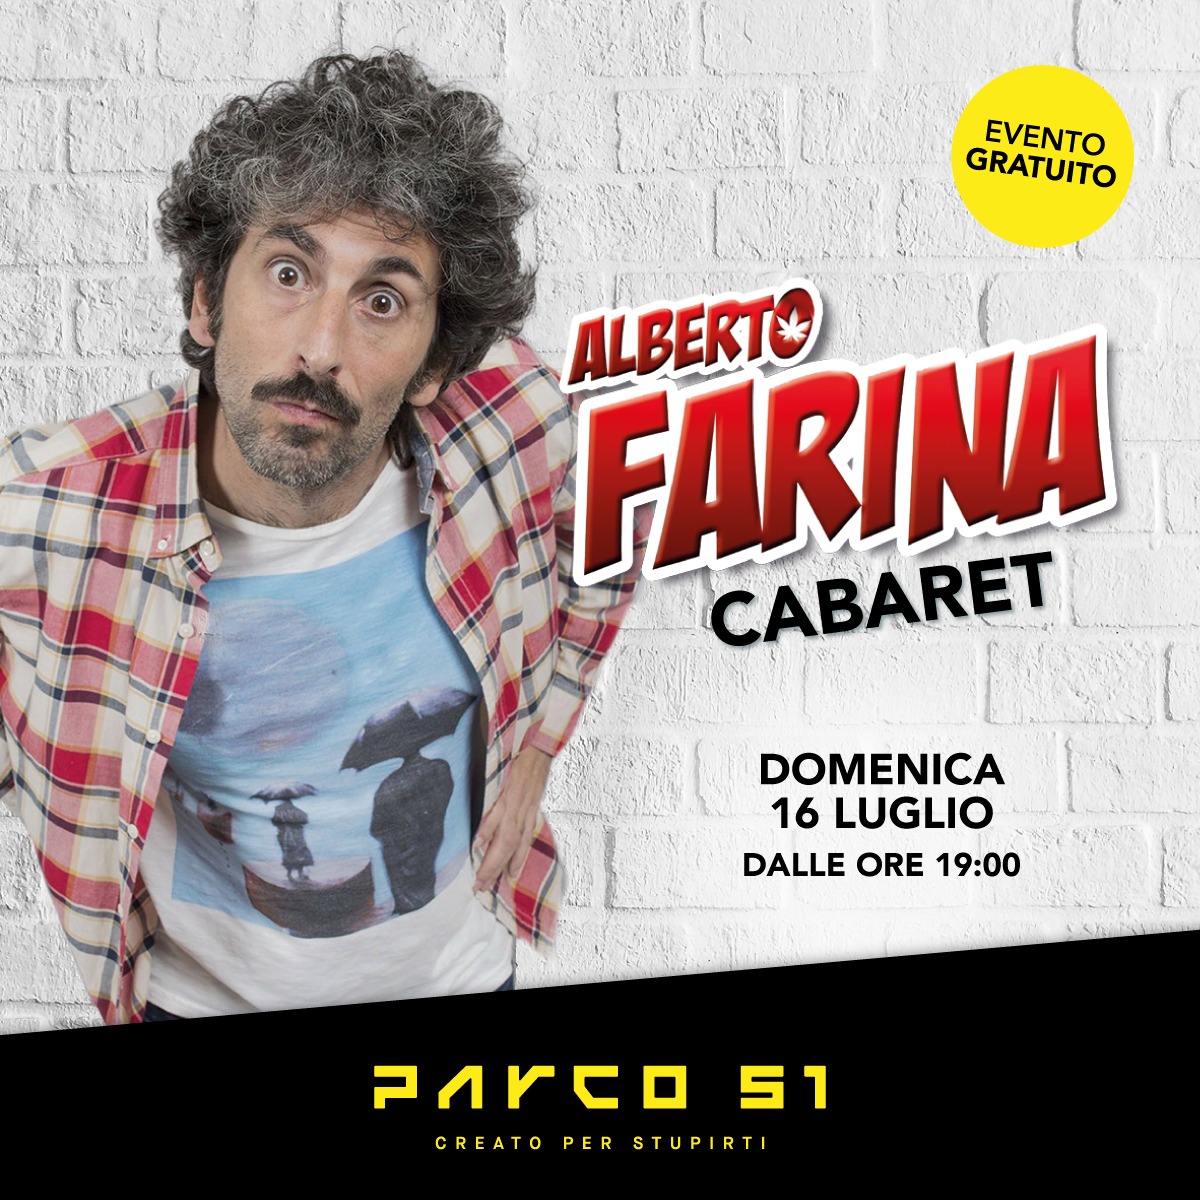 Alberto Farina cabaret